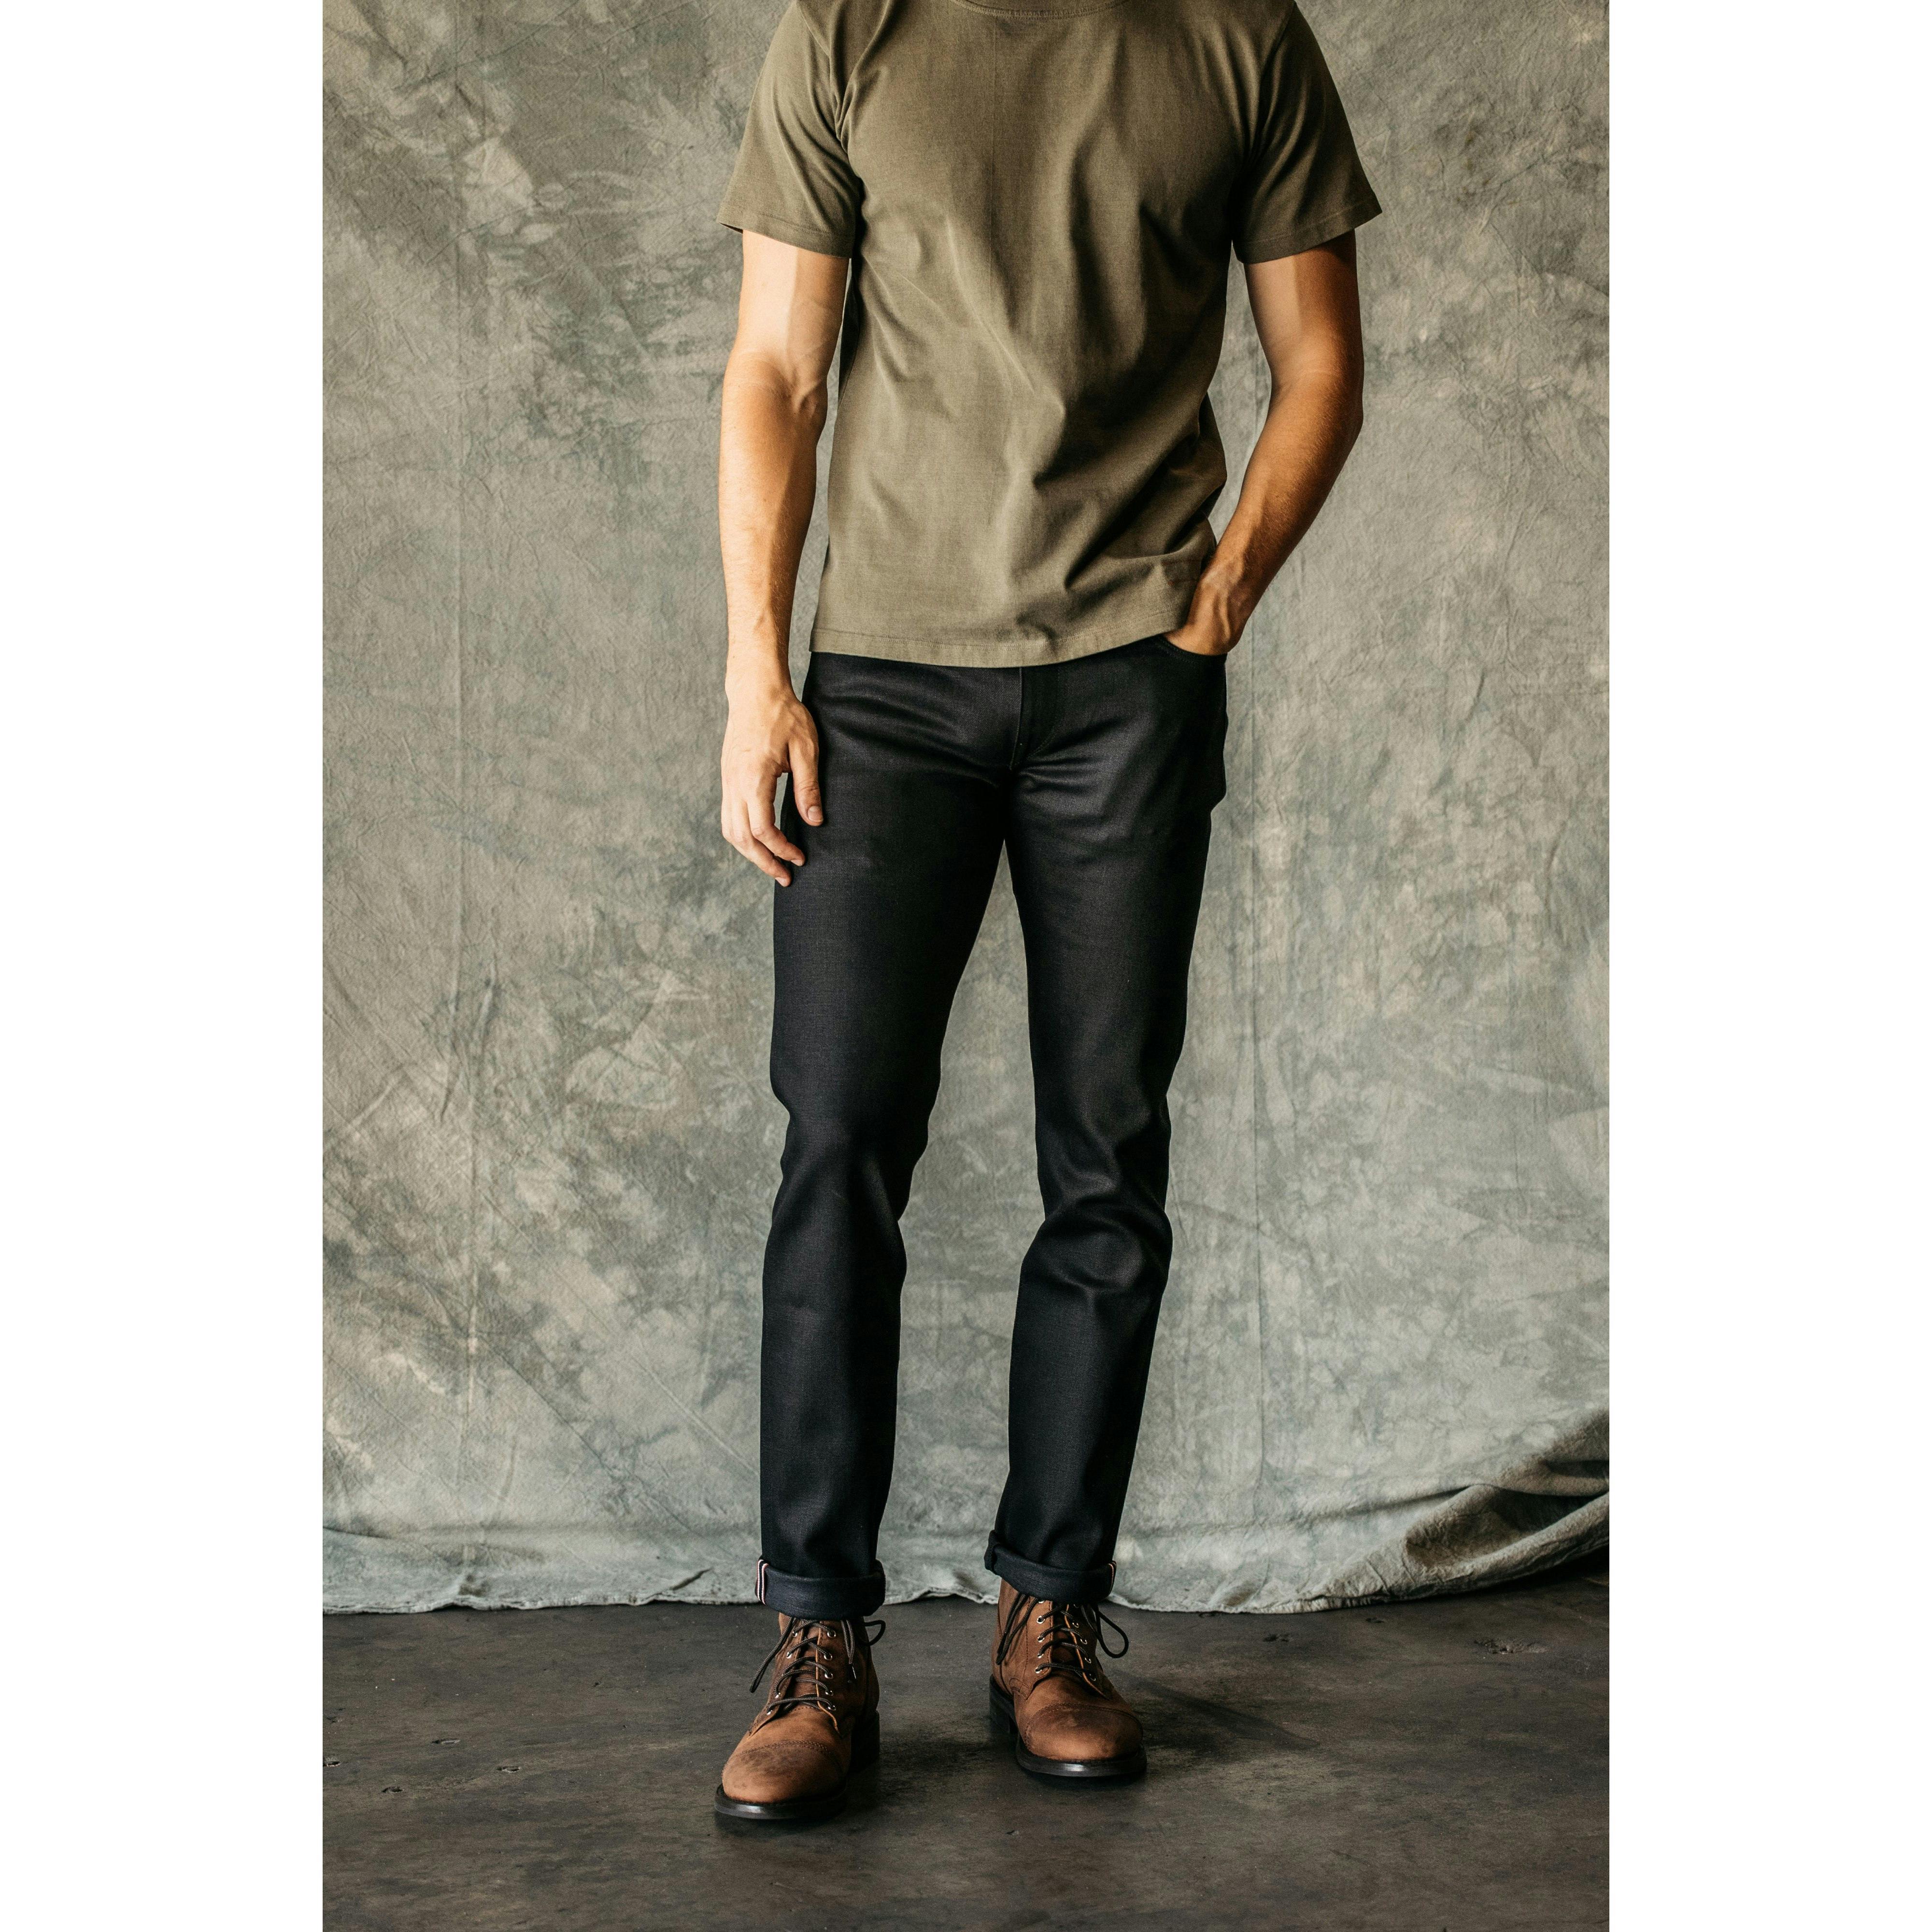 Billy Reid Men's Garment Dyed Selvedge Slim Jean, Black, 28 at  Men's  Clothing store